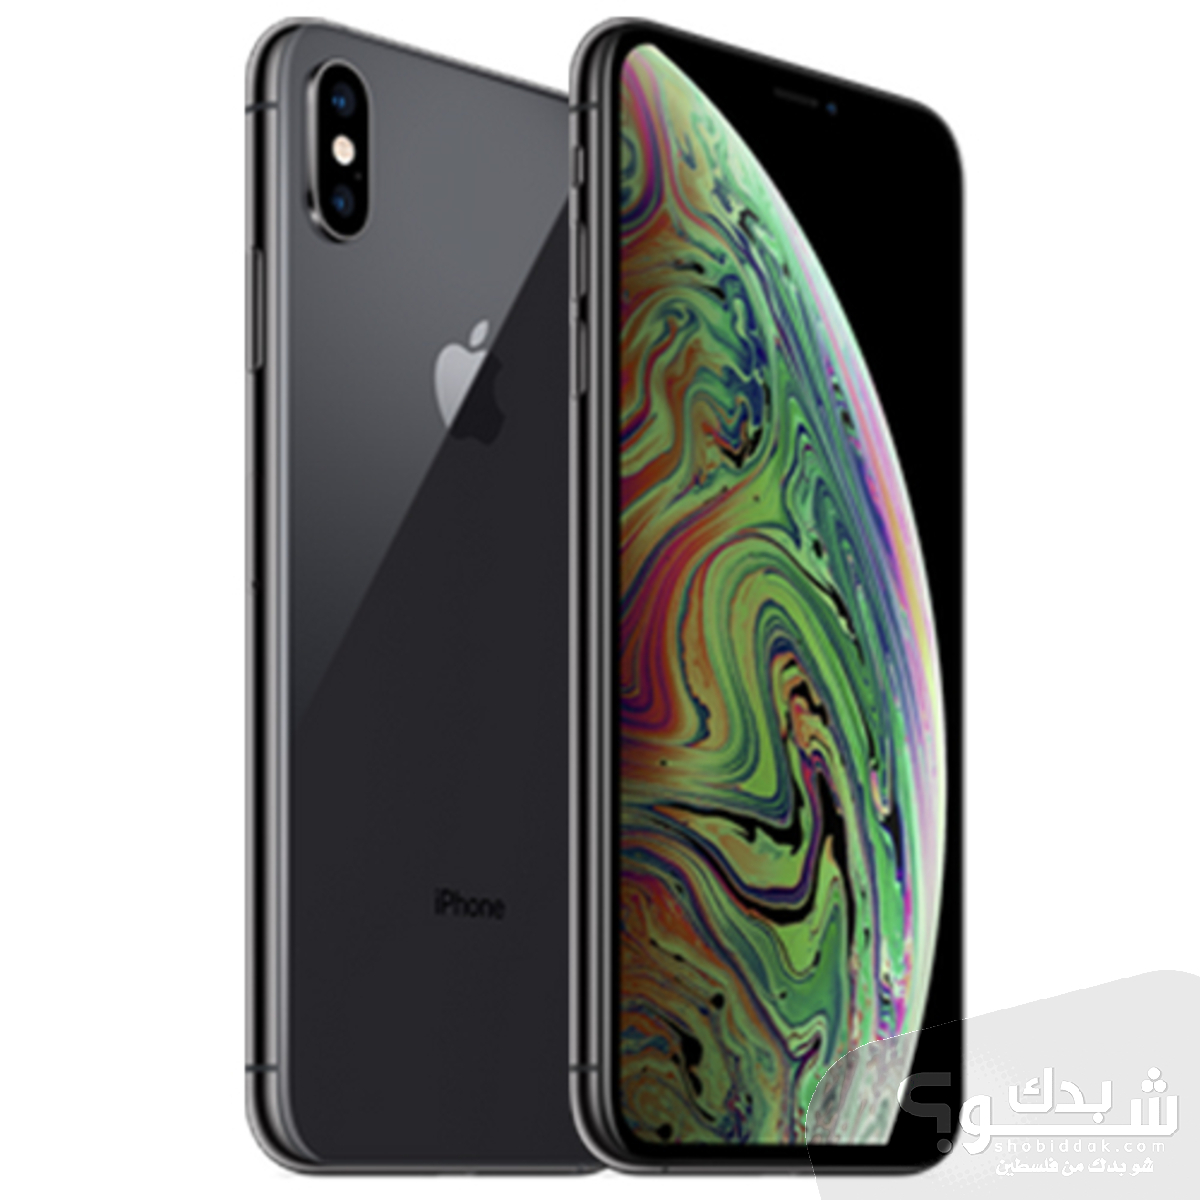 Apple ايفون XS - مستعمل | شو بدك من فلسطين؟